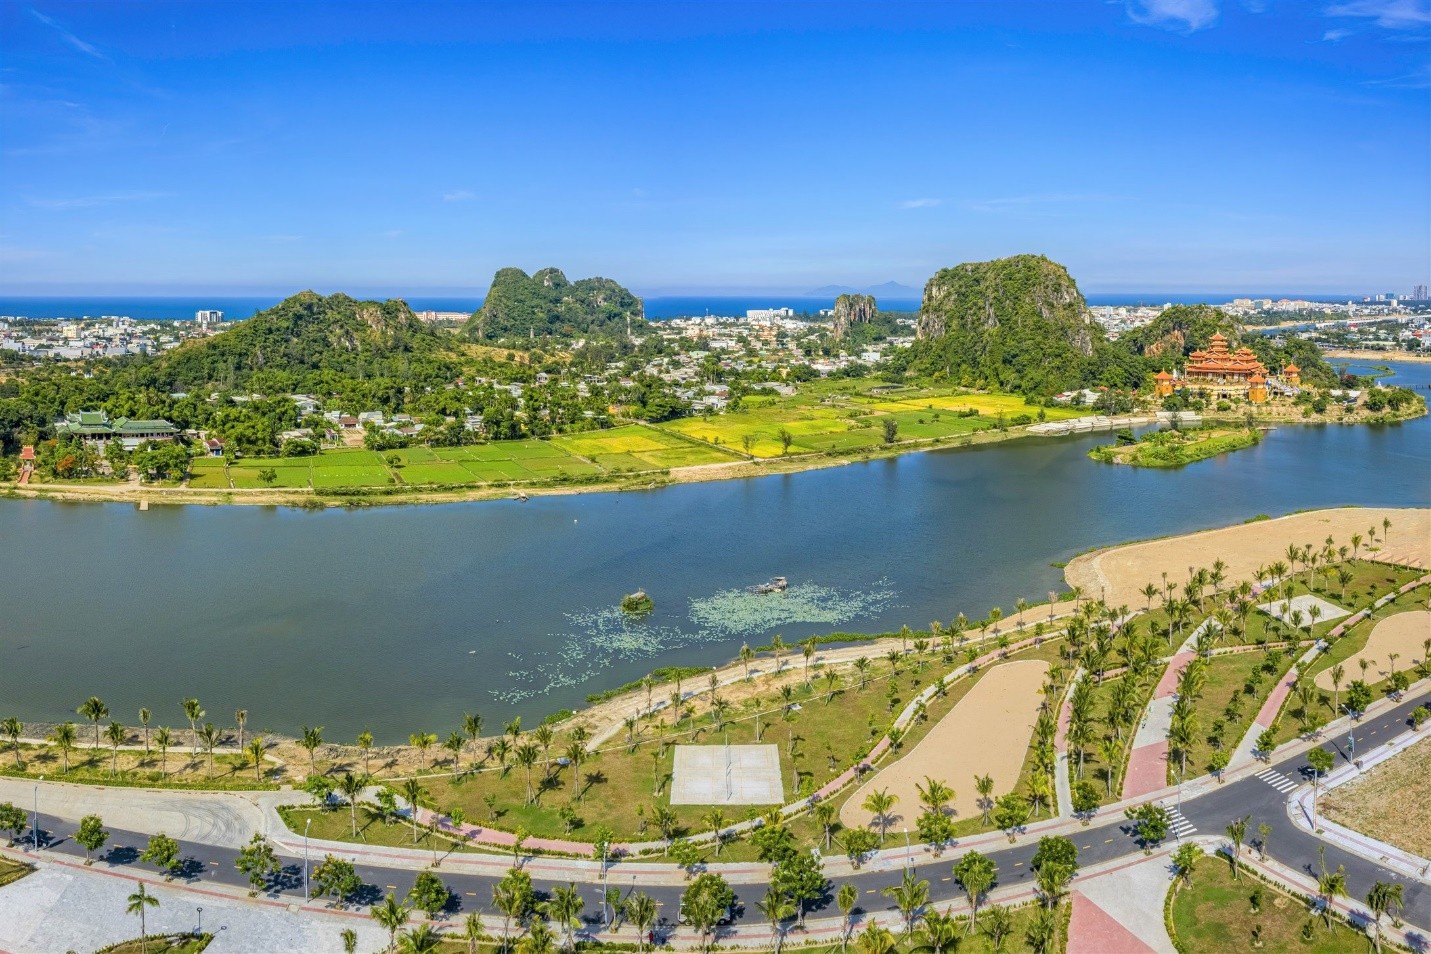 
TP. Đà Nẵng nơi có khá nhiều điều kiện tự nhiên để phát triển thị trường bất động sản
